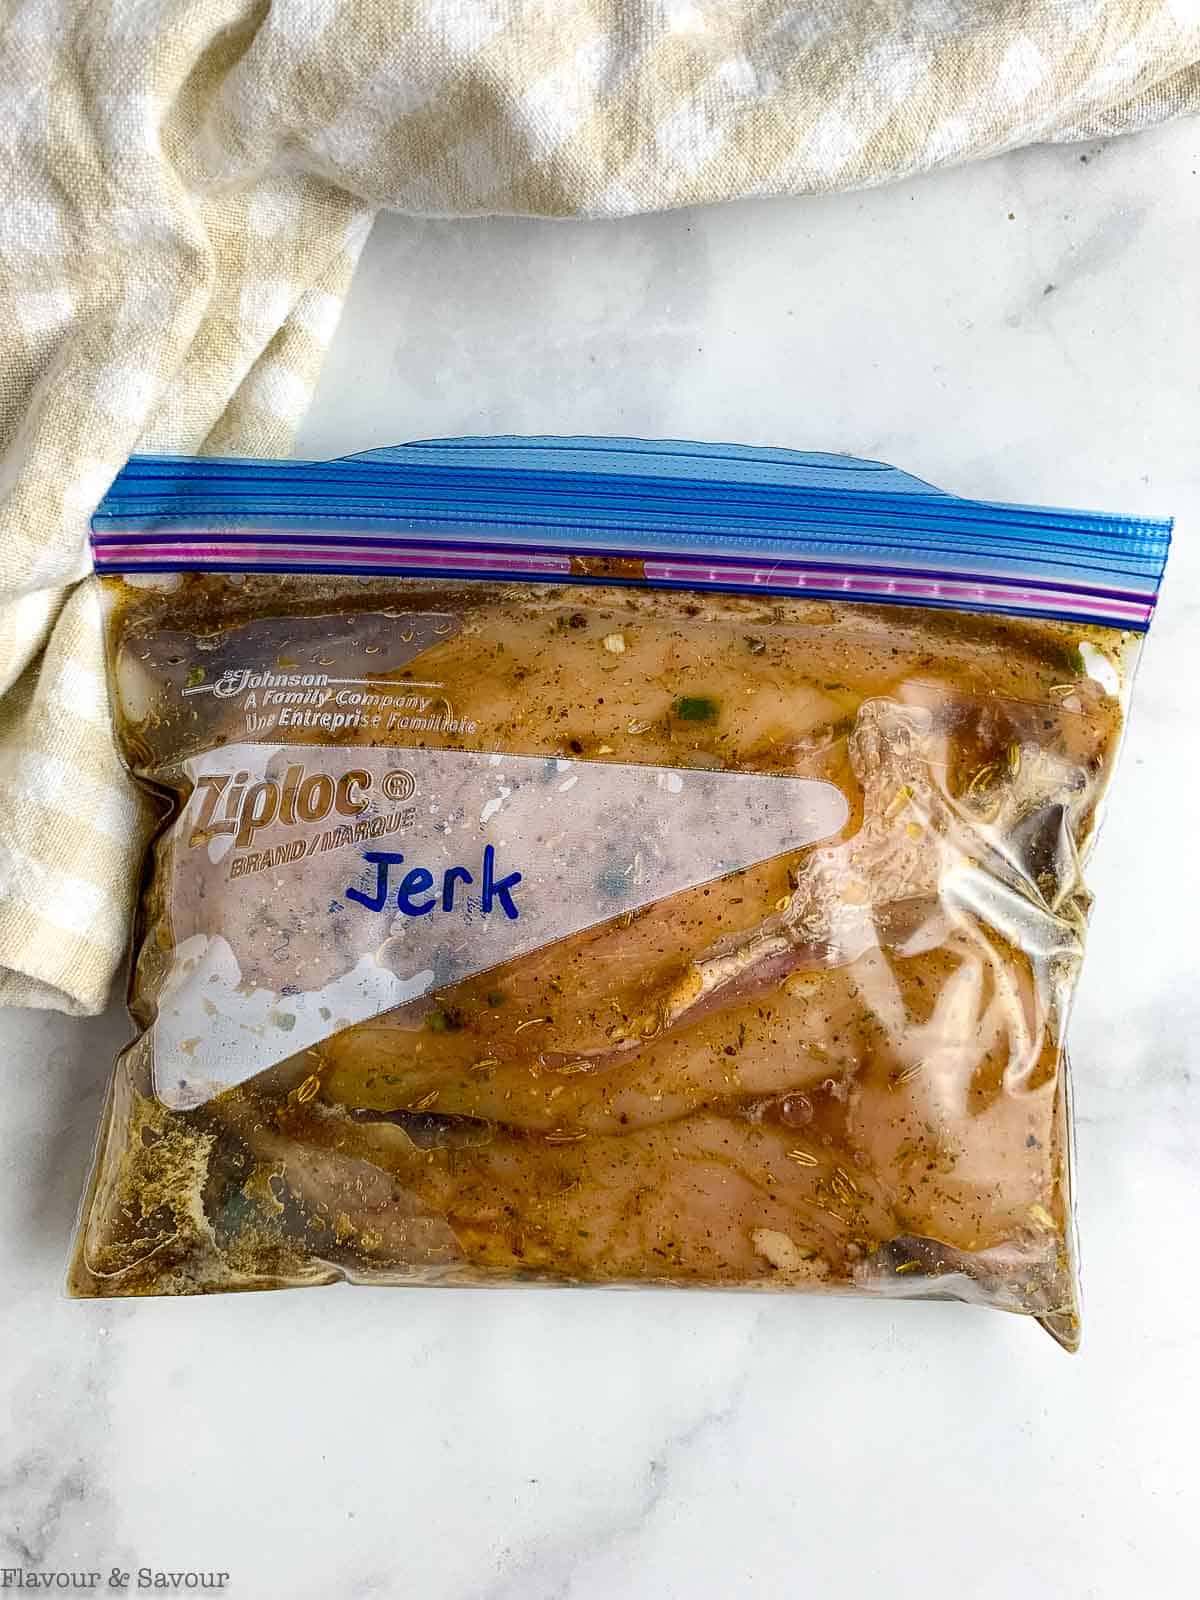 Chicken breasts in a Ziplock freezer bag with jerk marinade.